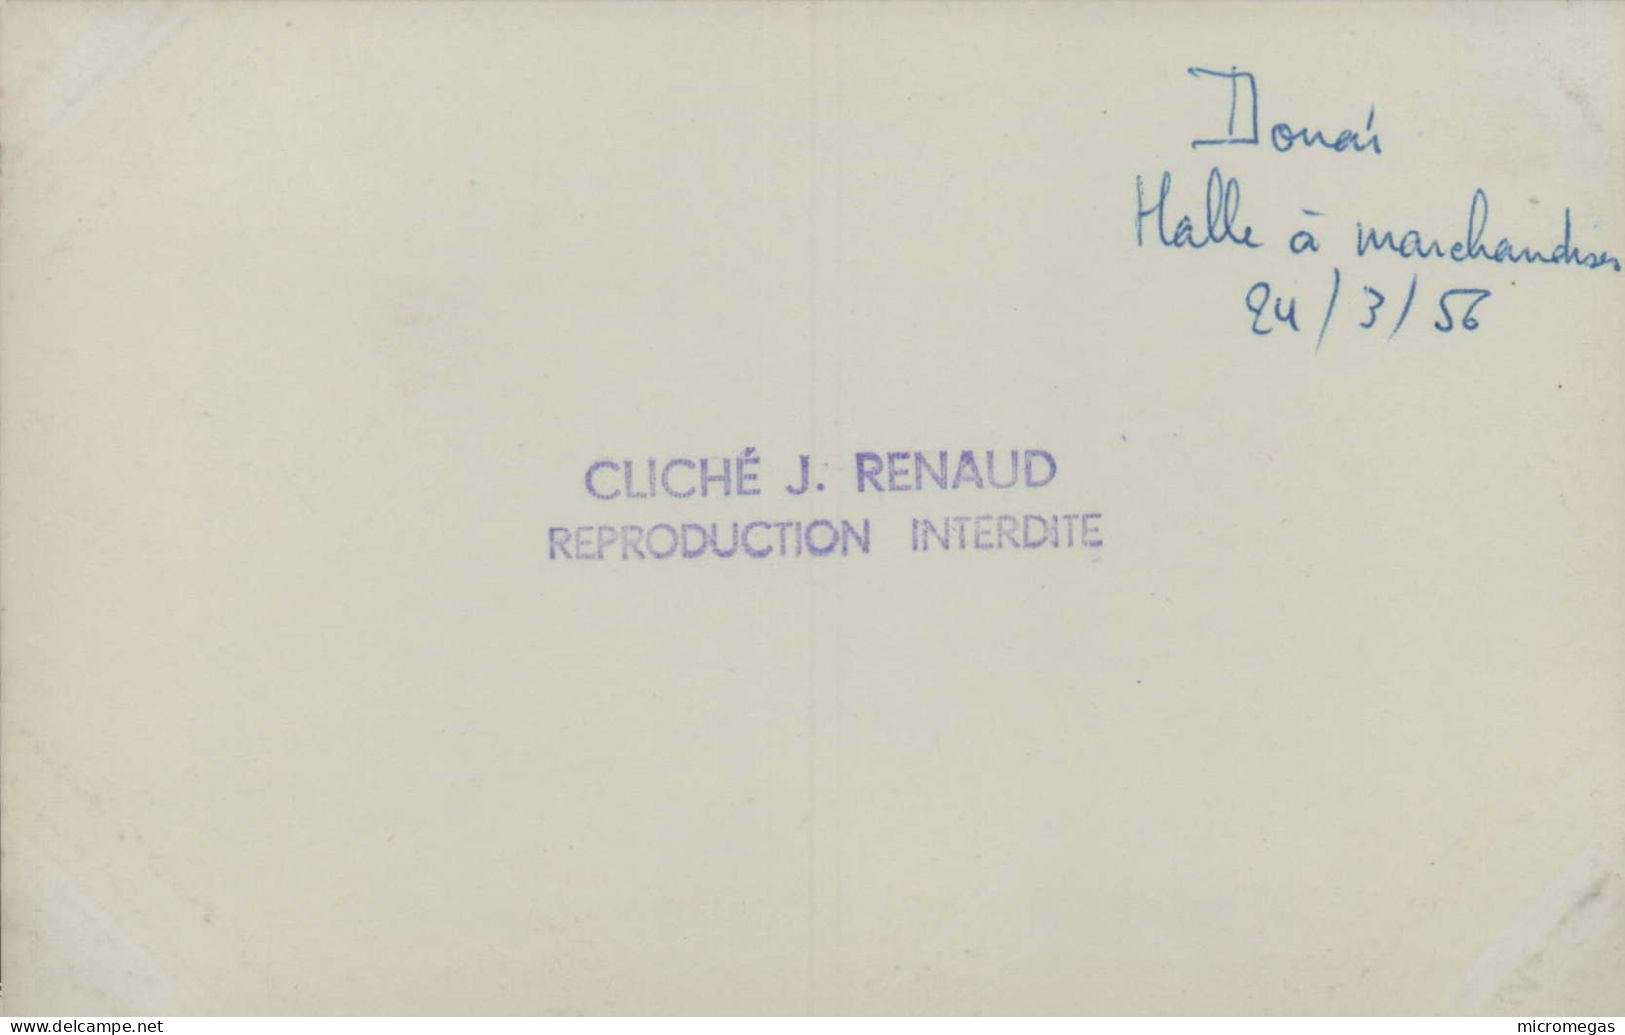 Douai - Halle à Marchandises, 24-3-1956 - Cliché J. Renaud - Trenes